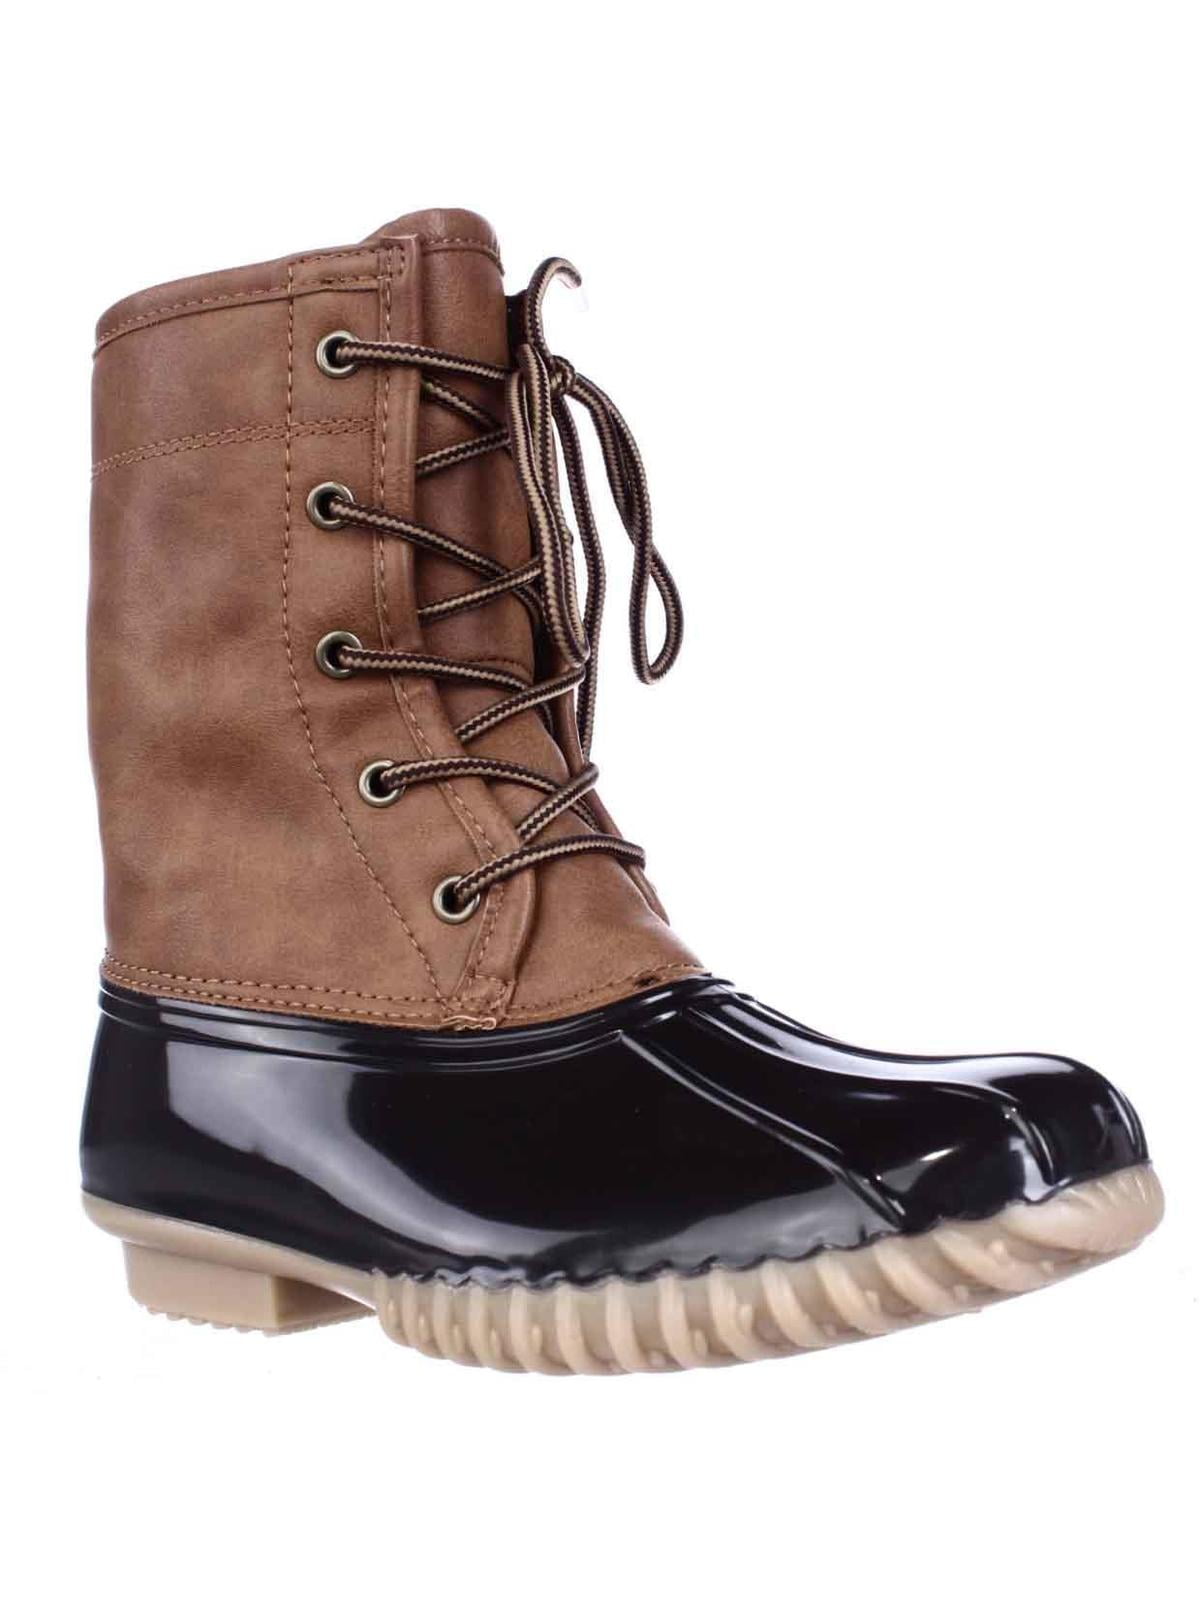 walmart canada boots